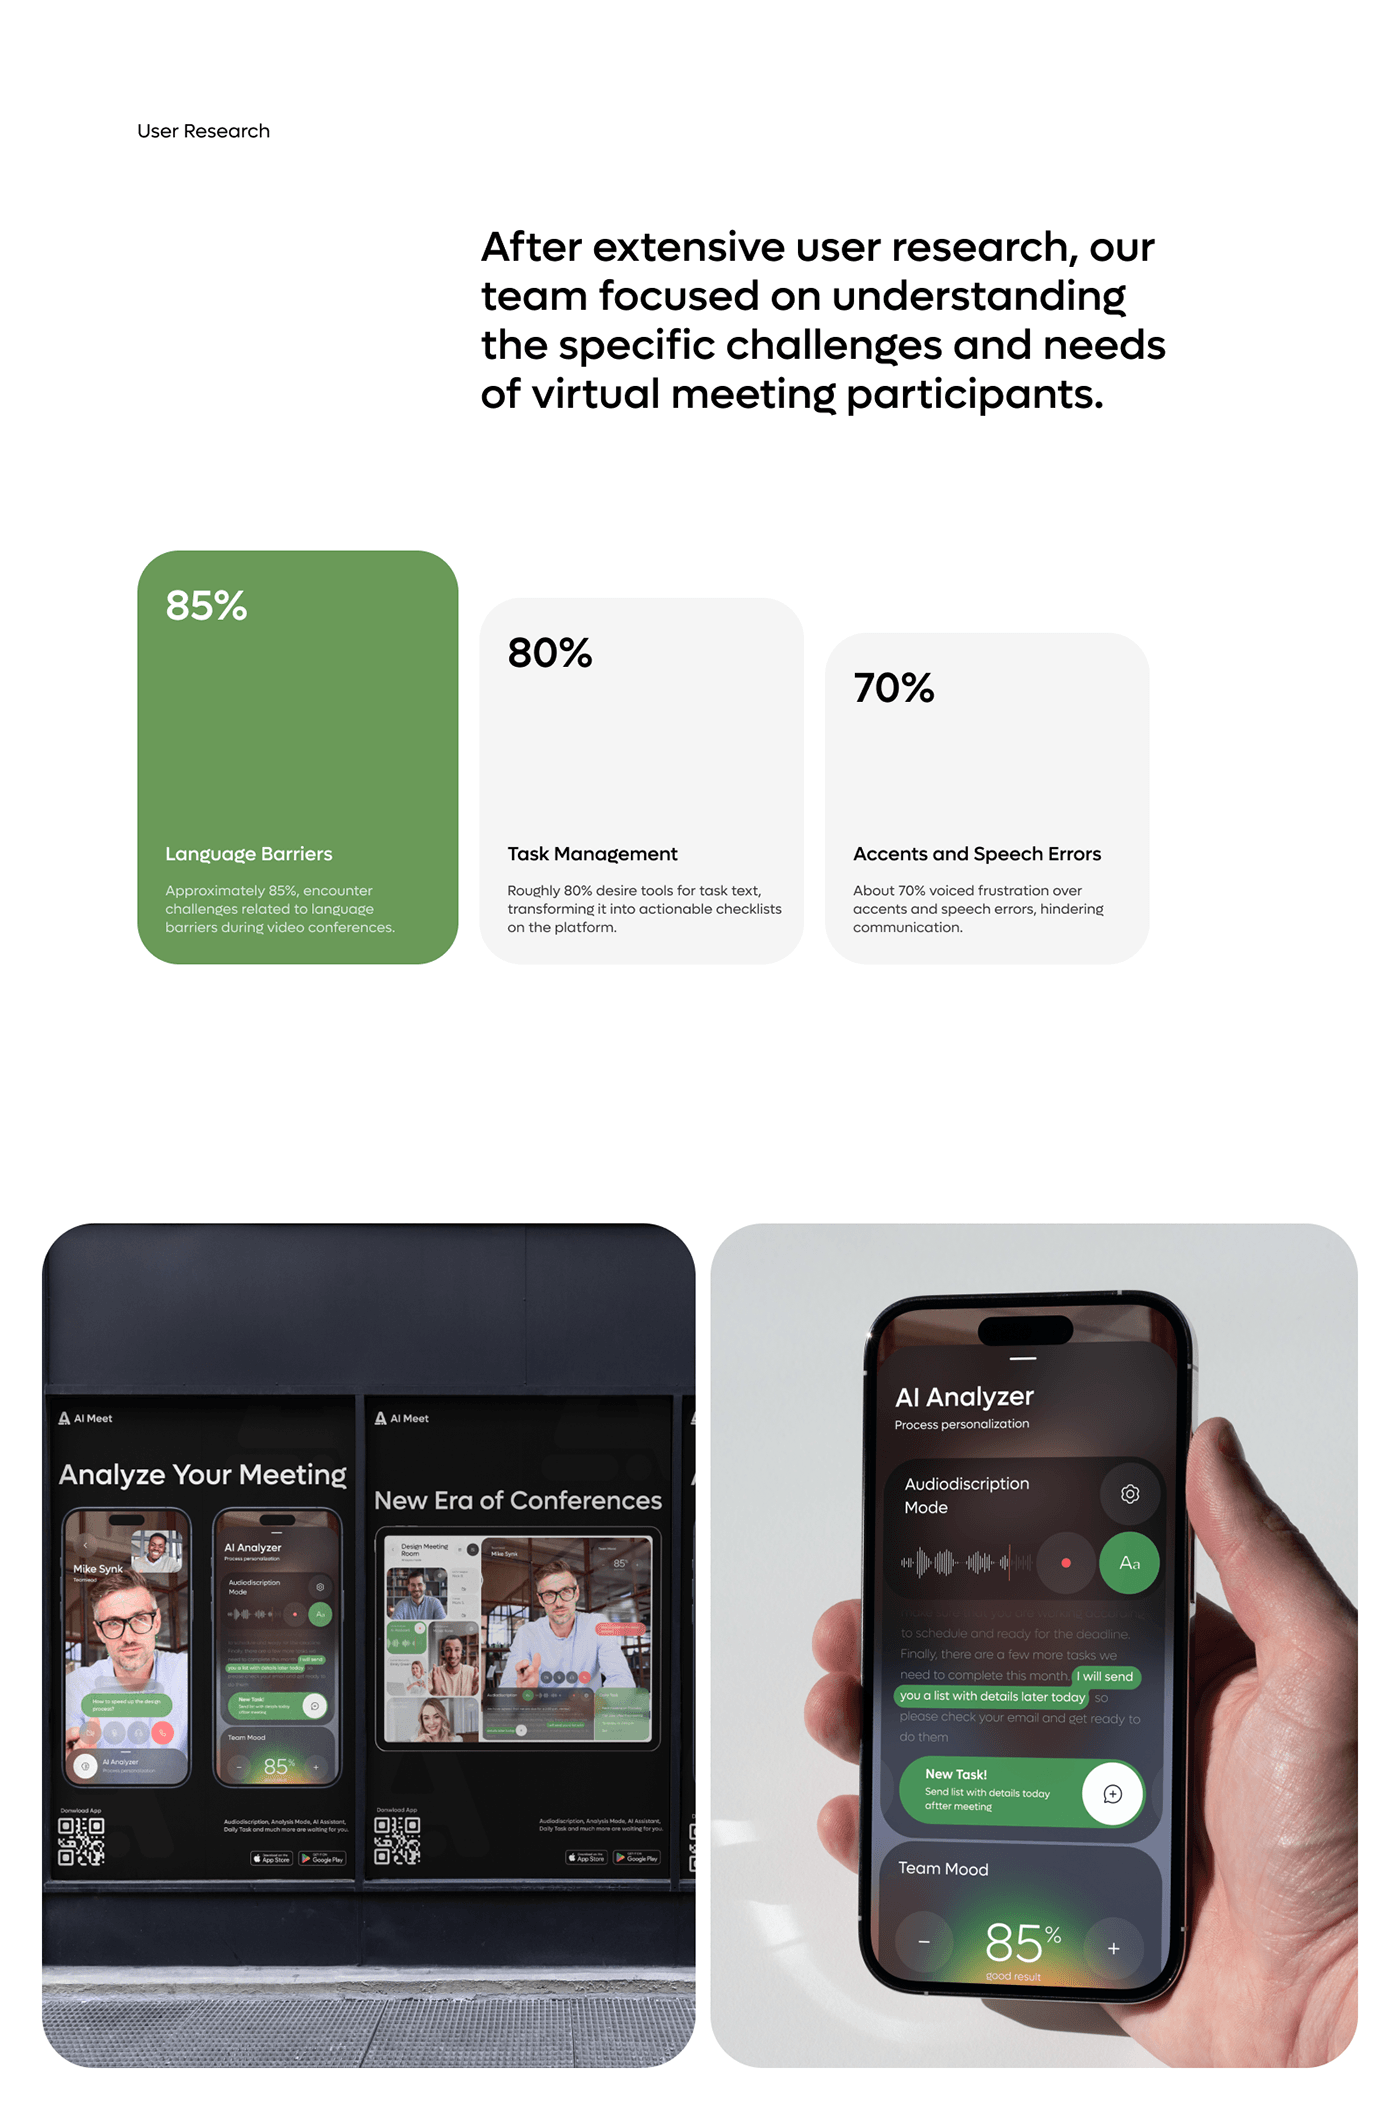 AI-Meet App - SaaS UX UI Design